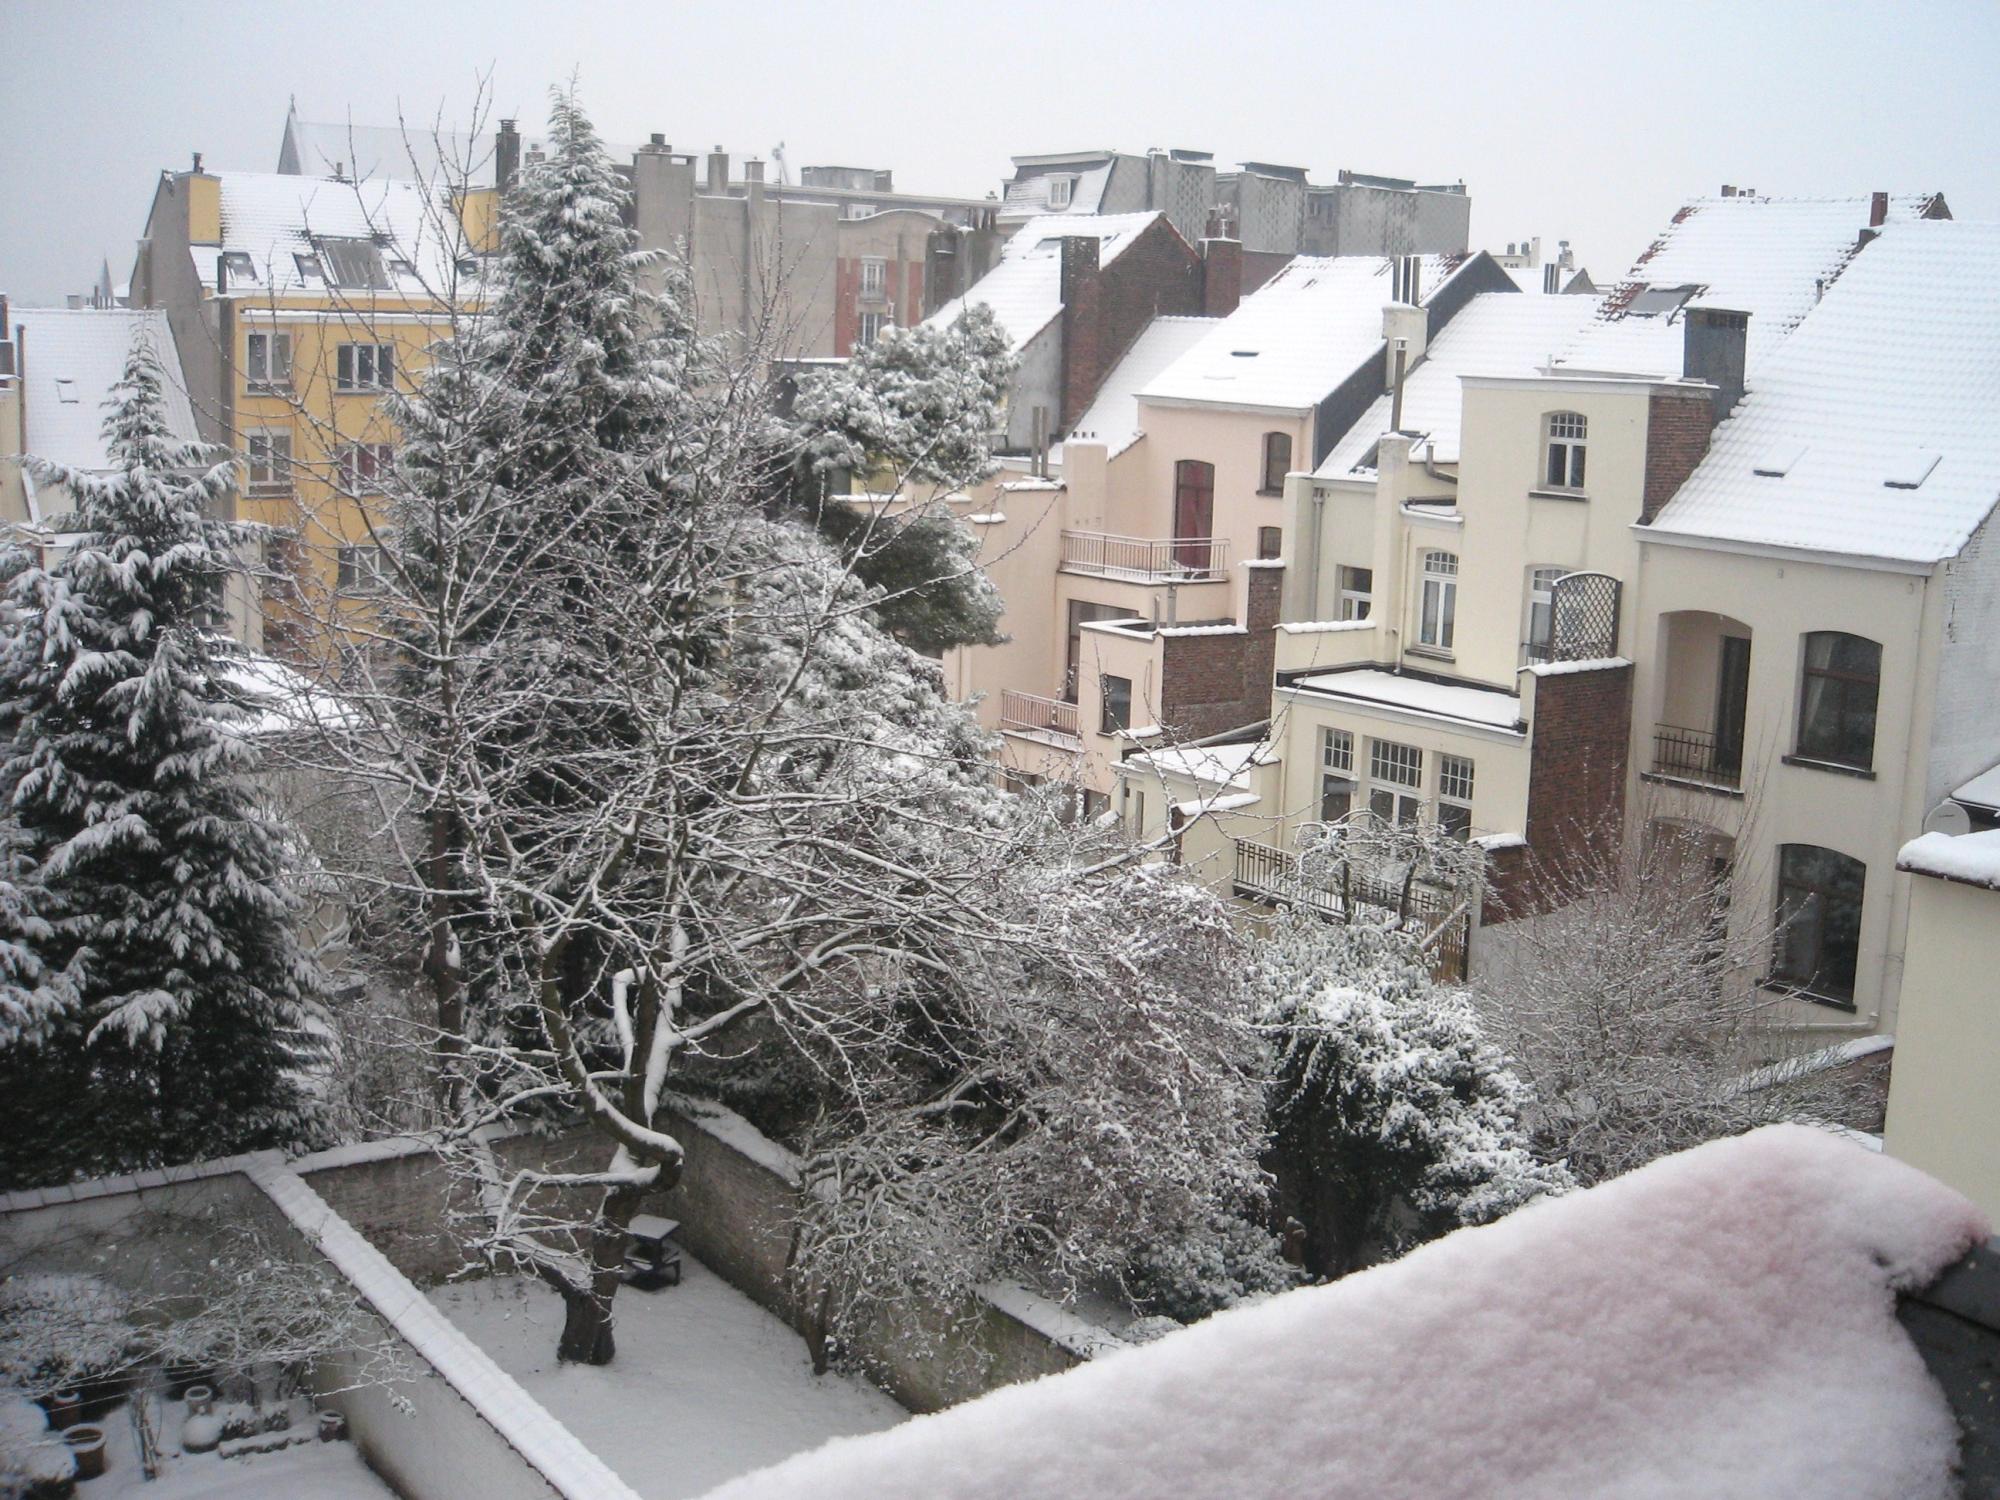 Brussels (2008-2009) - Snowy Backyard View #2